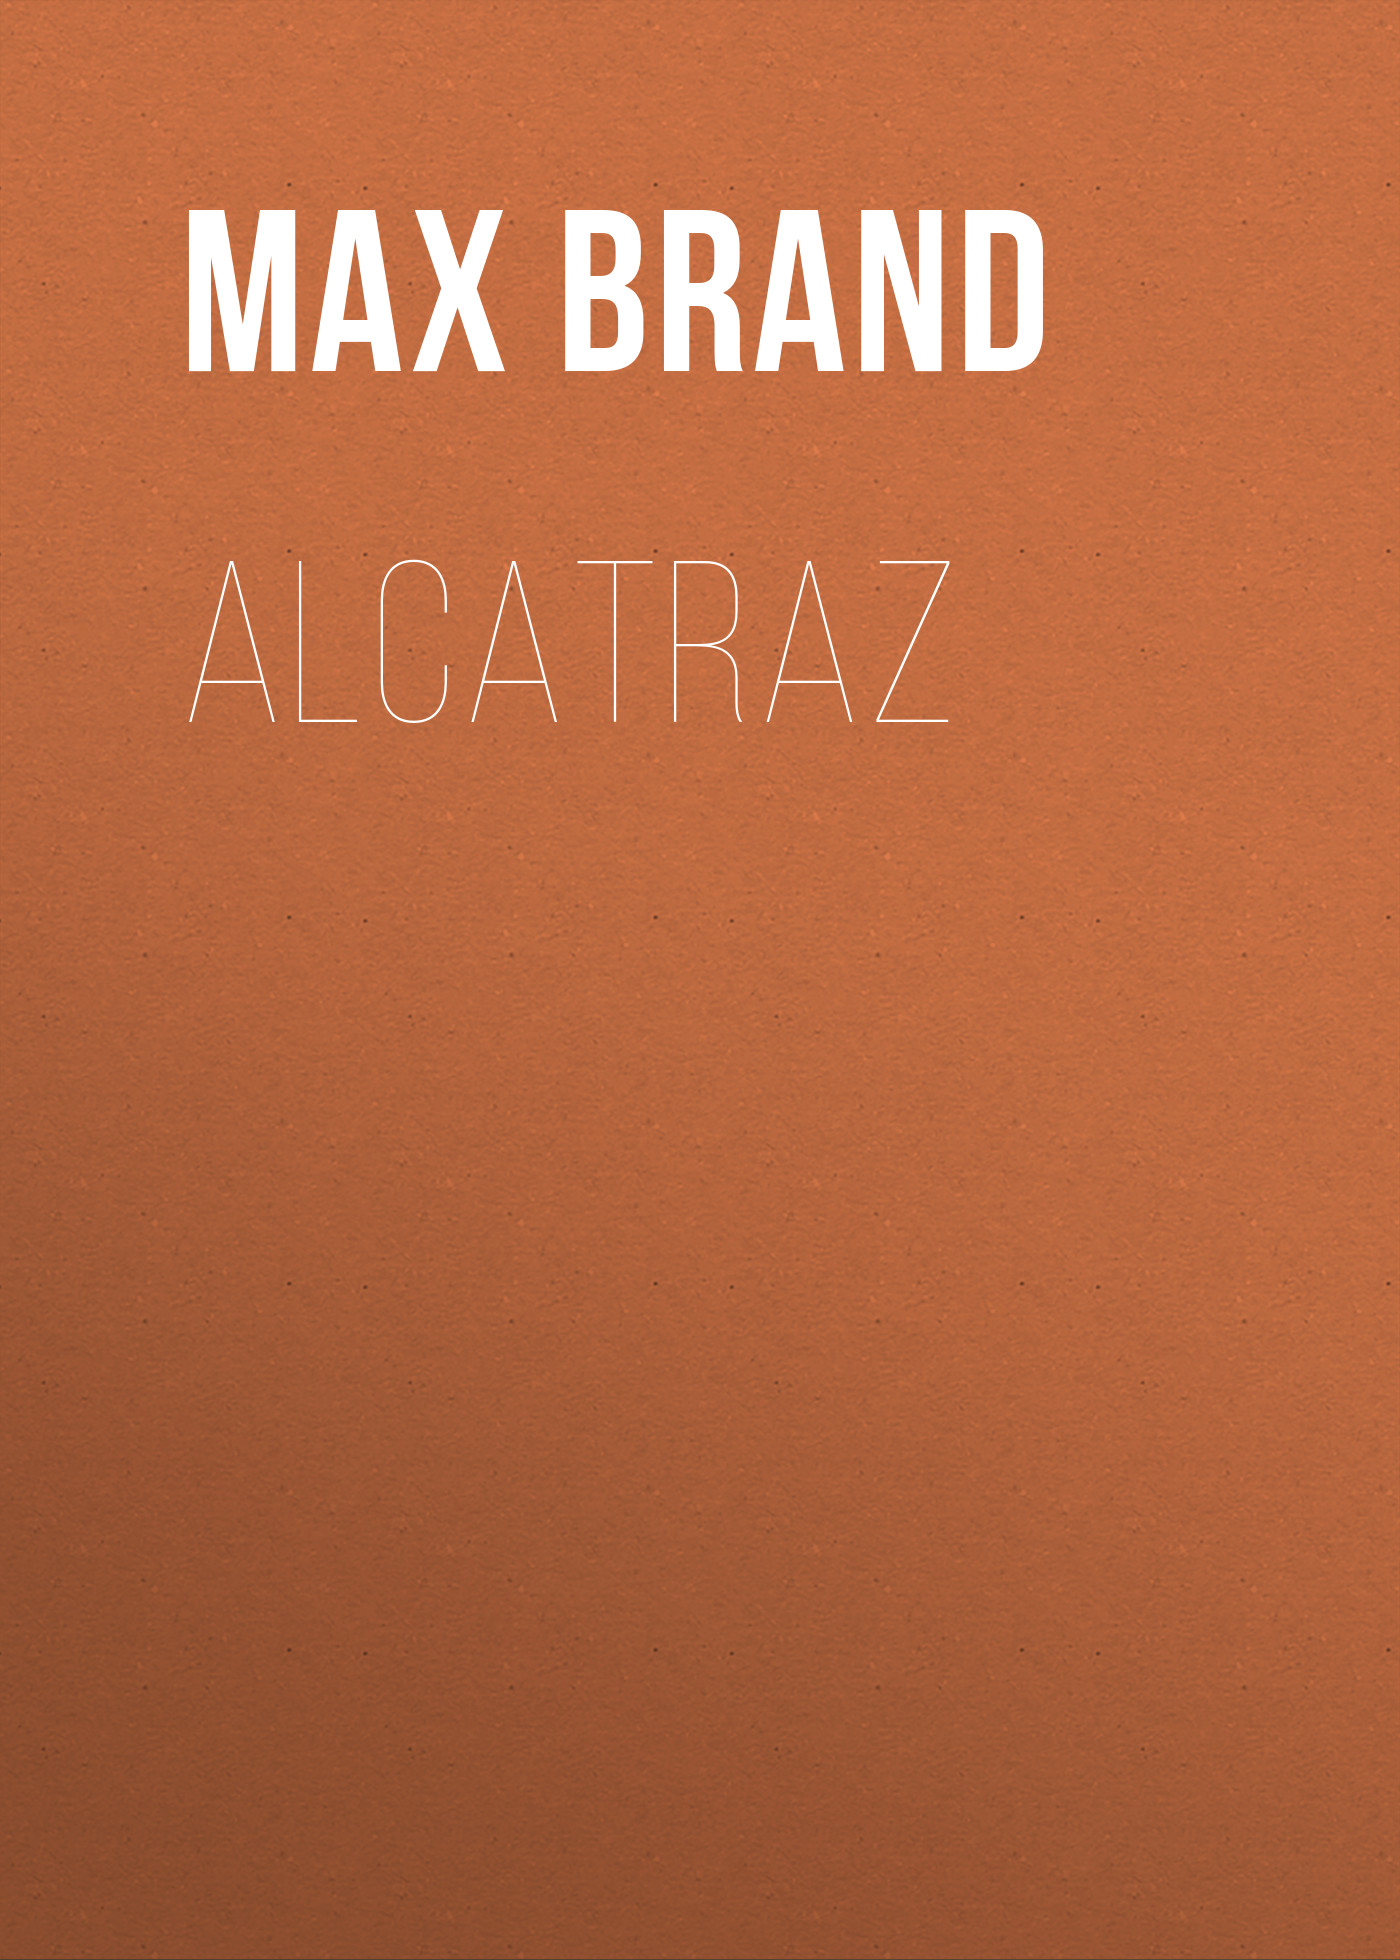 Книга Alcatraz из серии , созданная Max Brand, может относится к жанру Зарубежная классика, Литература 20 века, Зарубежная старинная литература. Стоимость электронной книги Alcatraz с идентификатором 42627475 составляет 0 руб.